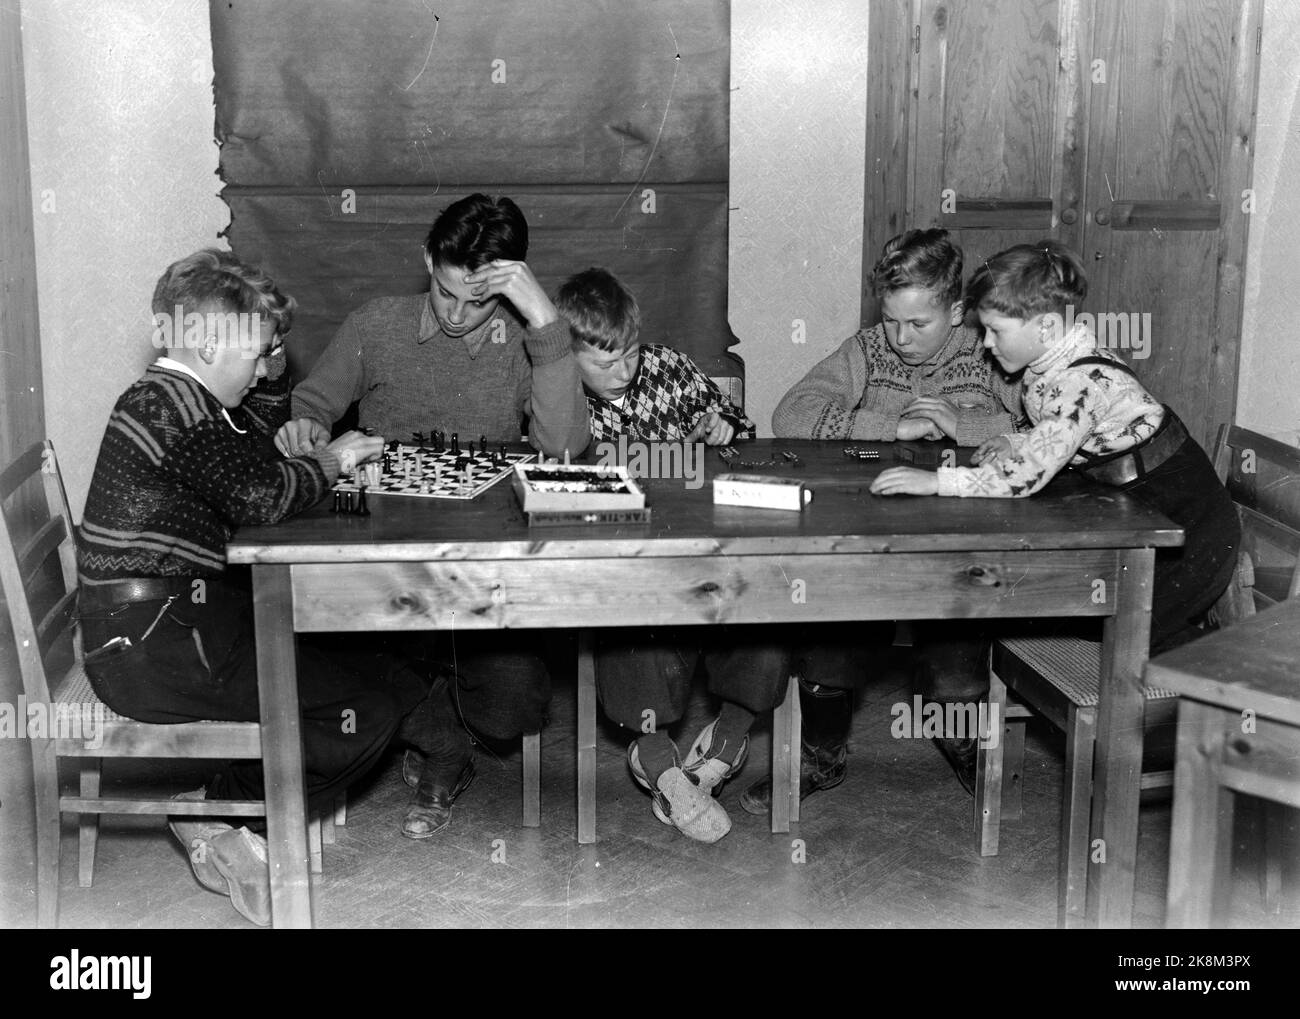 Octobre 1943. Deutsche Schule à Oslo / l'école allemande - Maison scolaire à Uranienborg Terrace 21. Les garçons jouent aux échecs et aux jouets. Photo: Johsen / NTB Banque D'Images